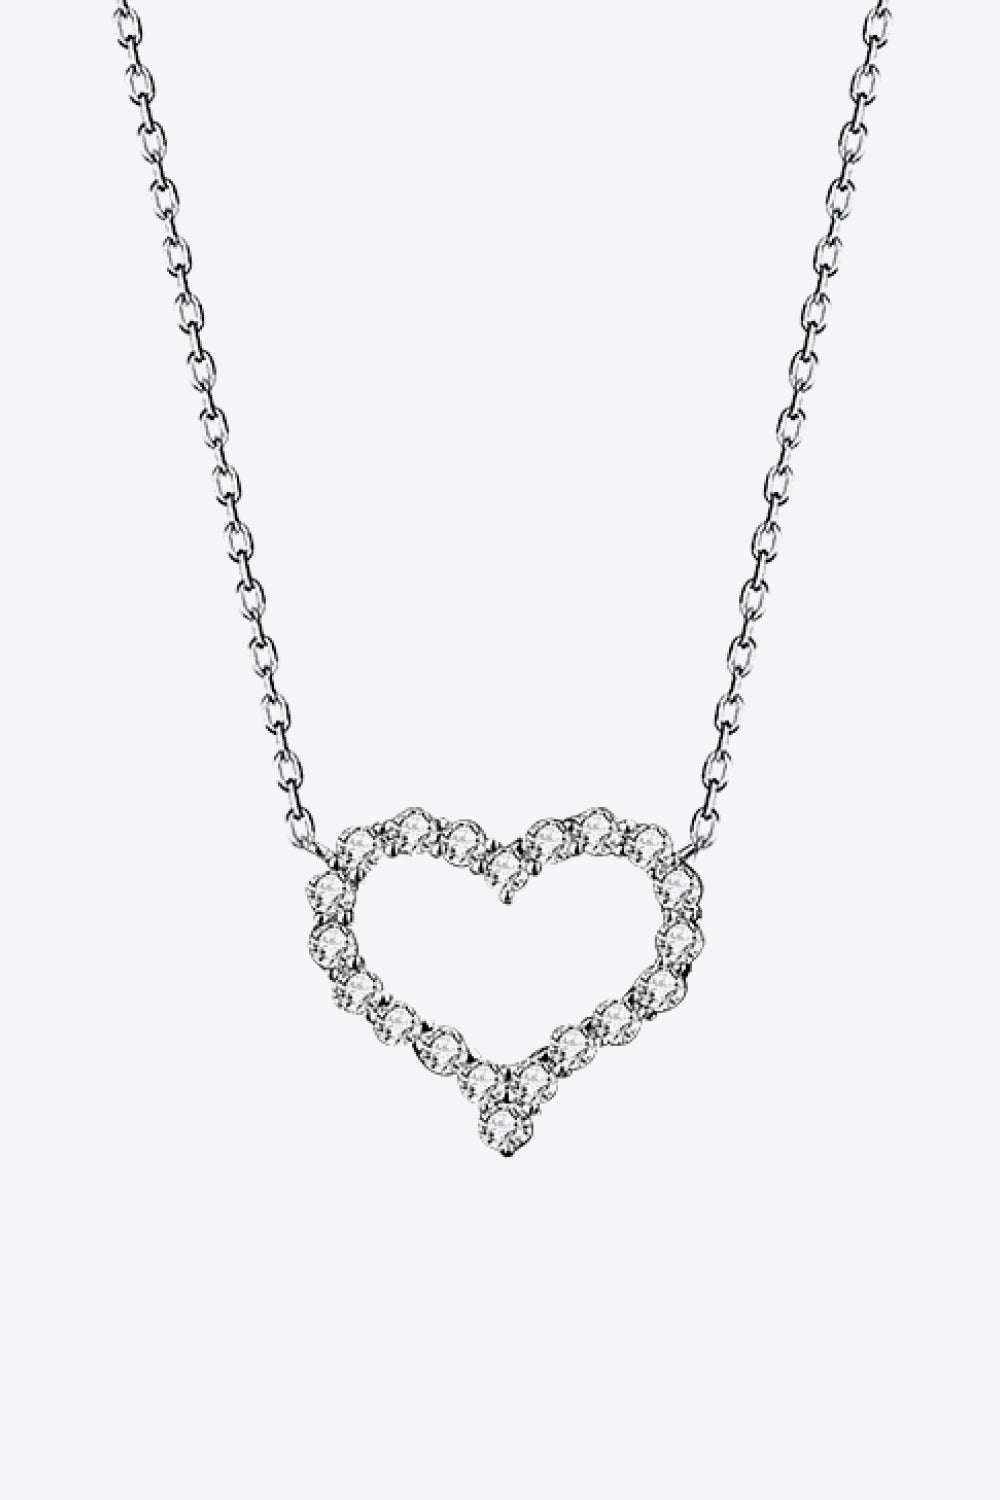 1 Carat Moissanite Heart Pendant Chain-Link Necklace - DromedarShop.com Online Boutique